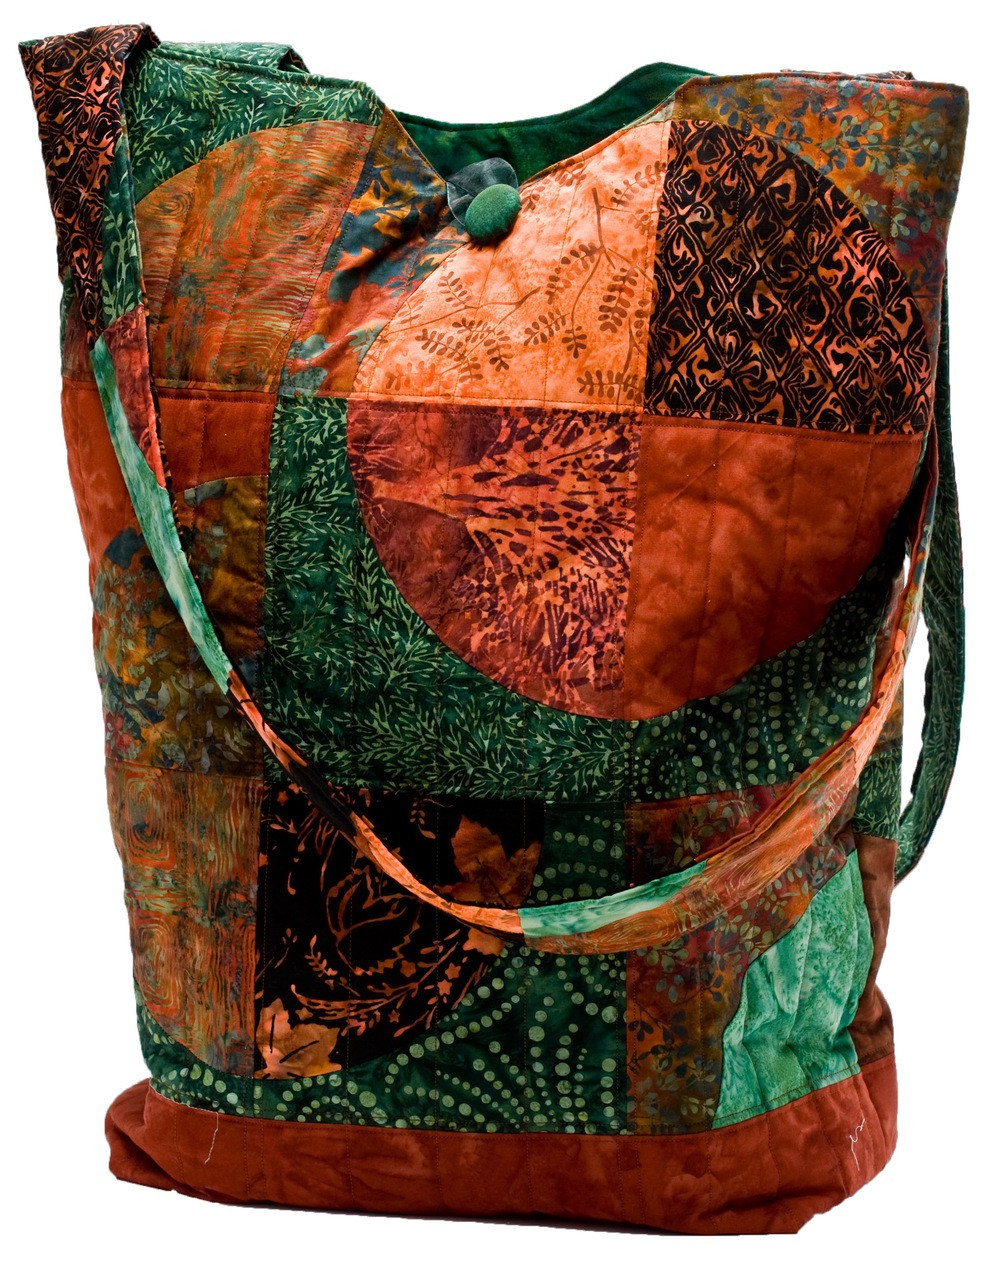 Embroidery Quilt shoulder bag